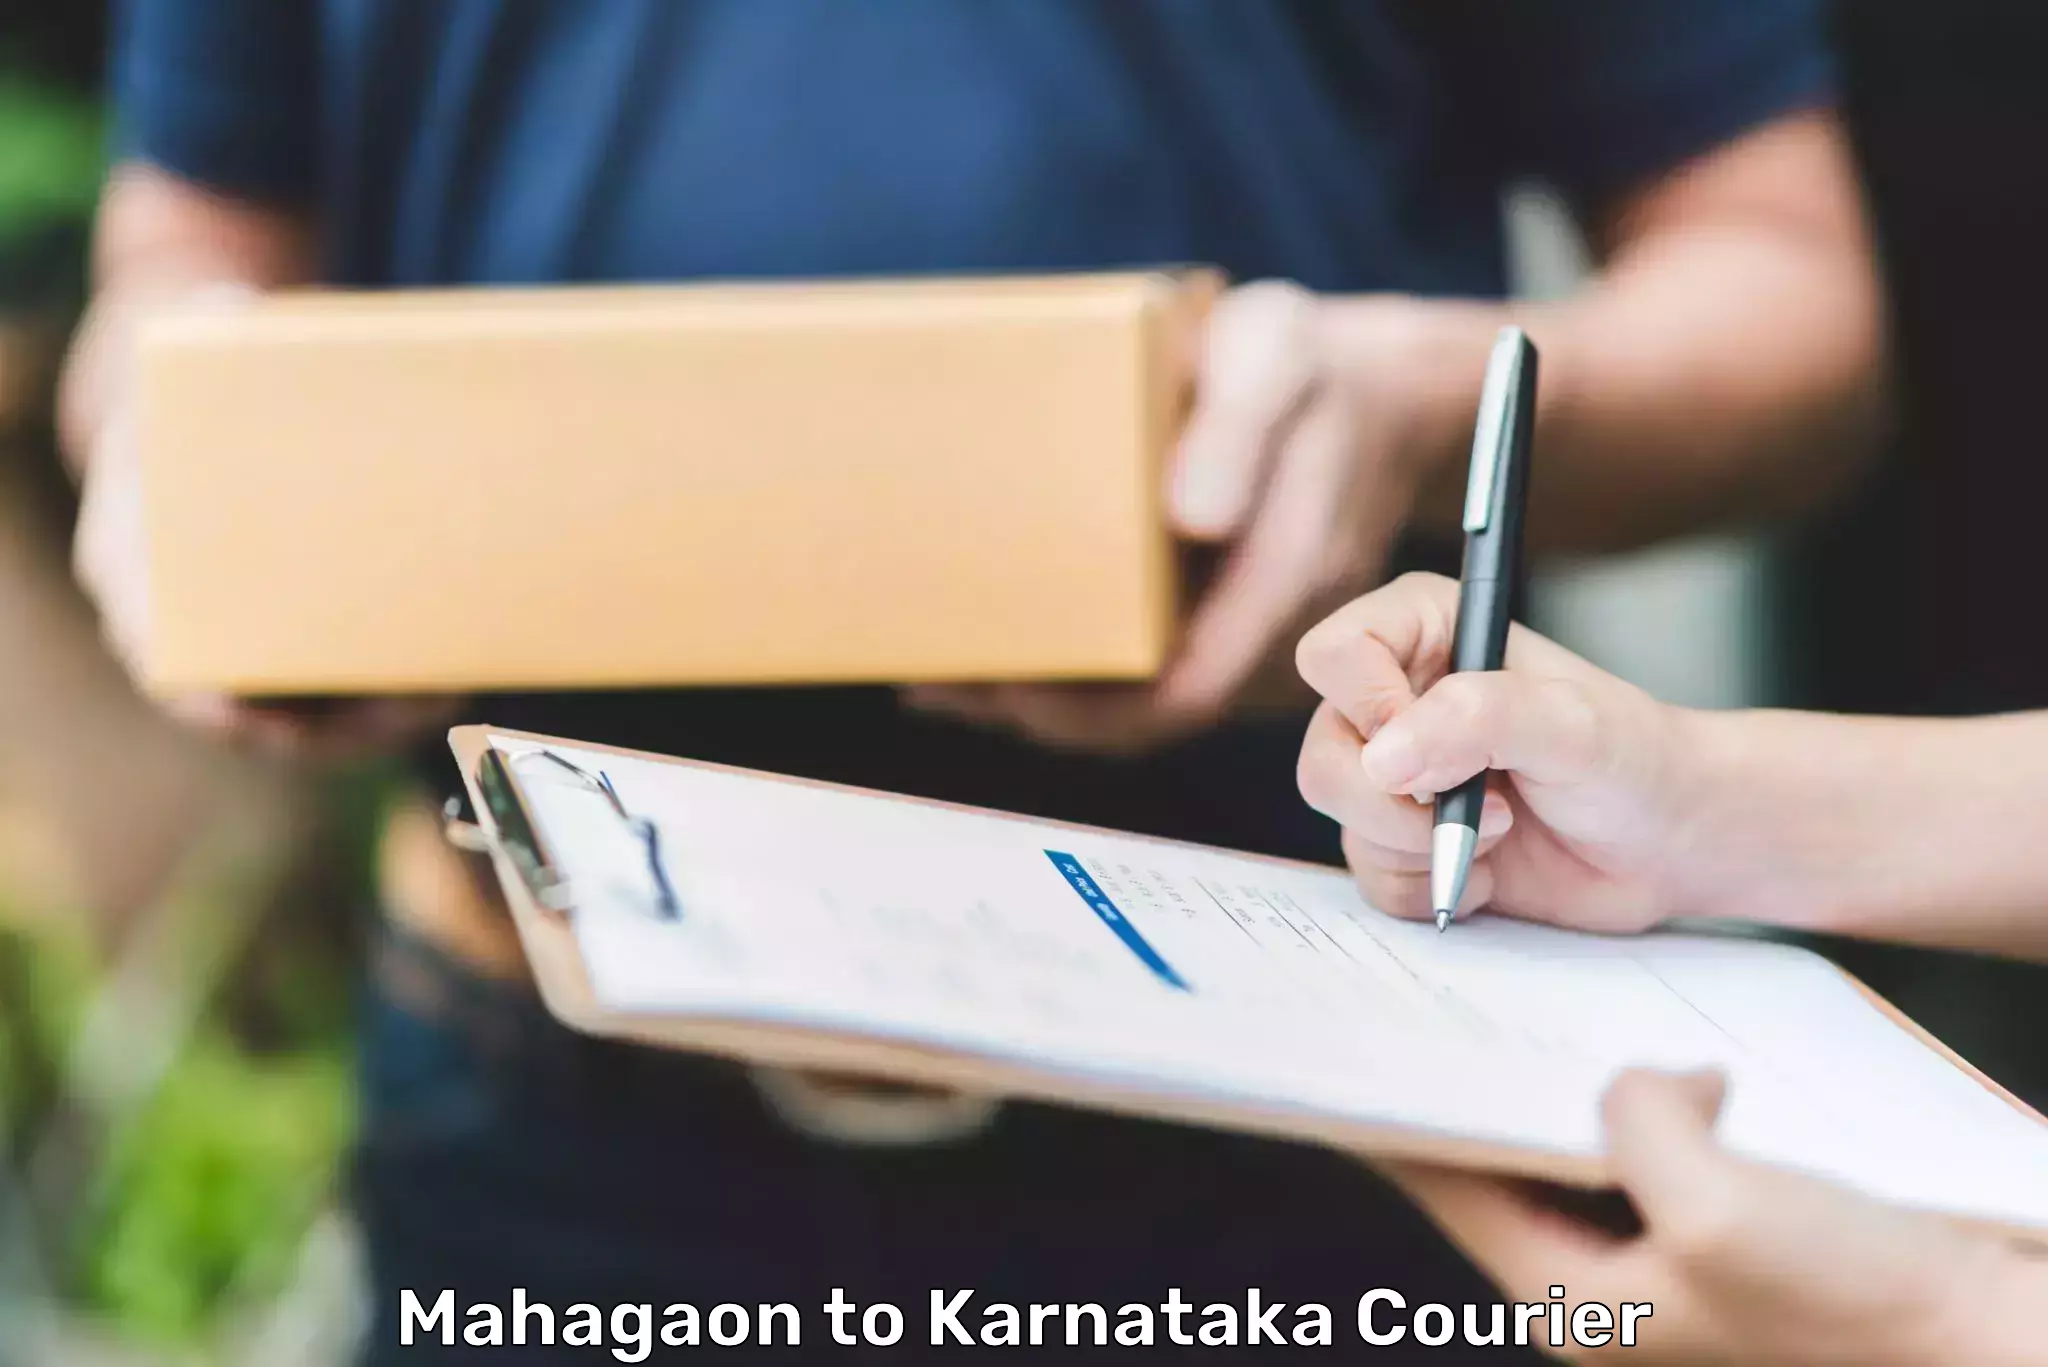 Express delivery solutions Mahagaon to Karnataka